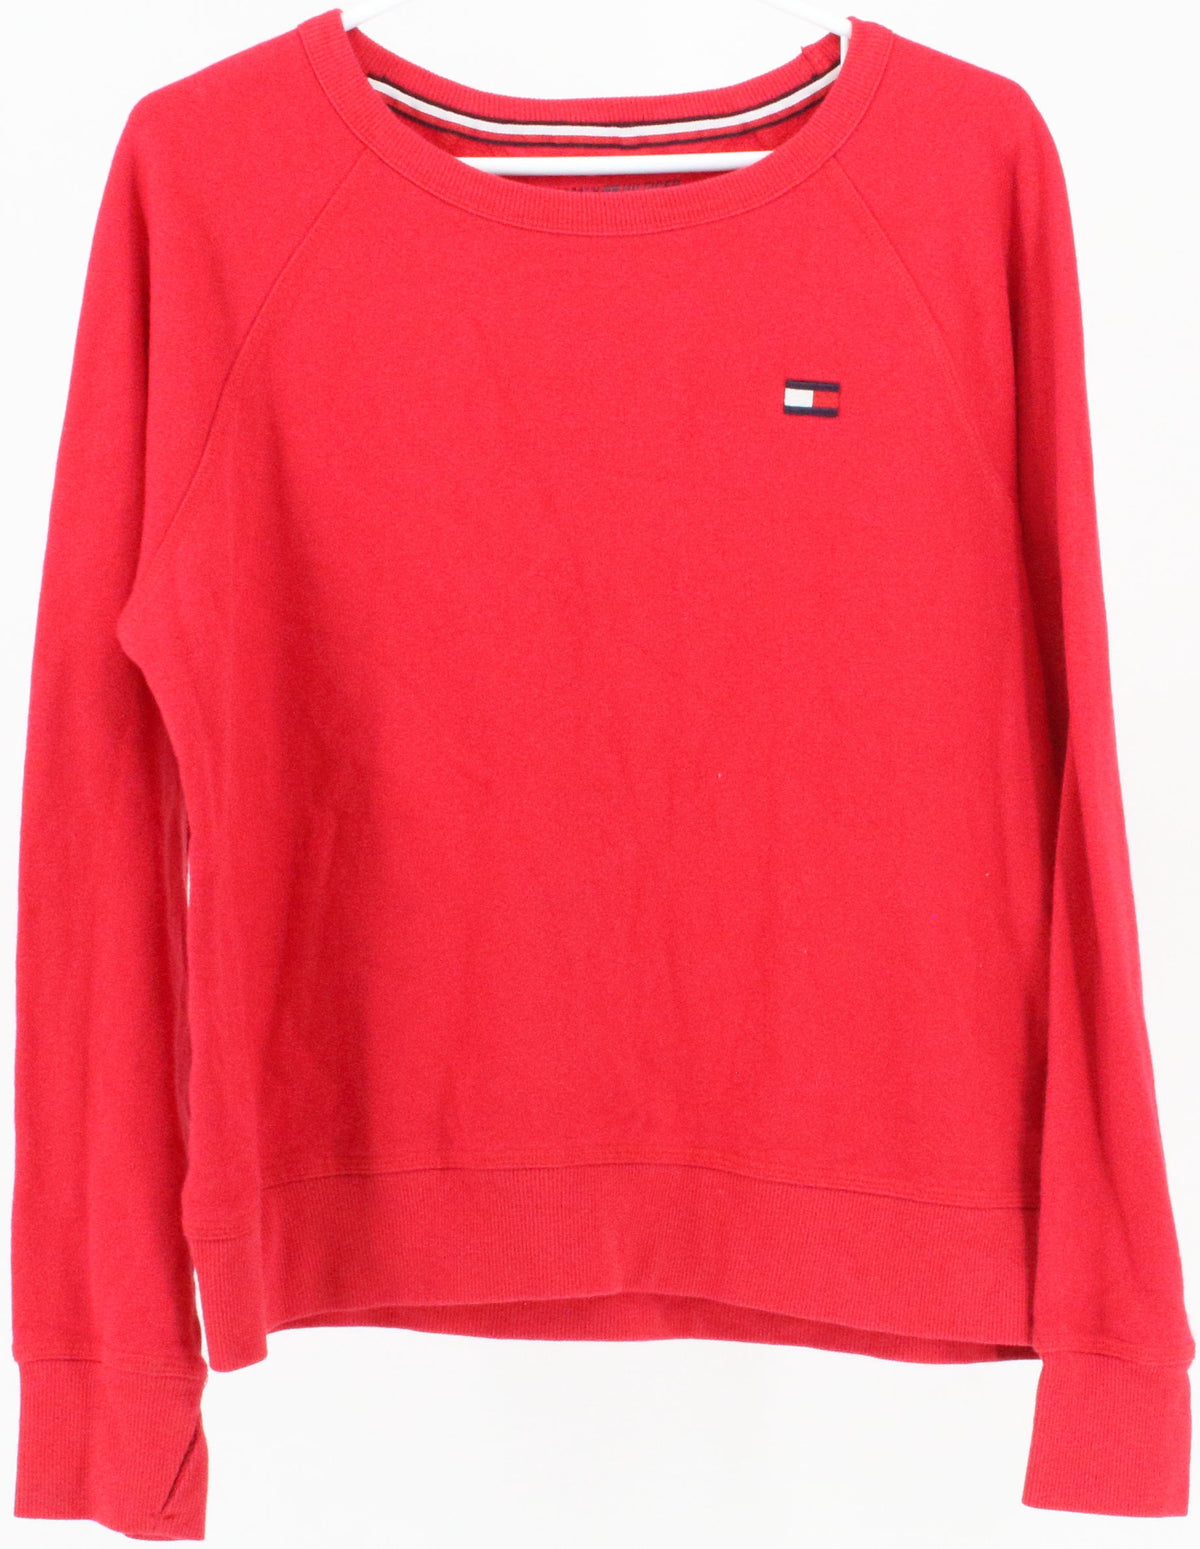 Tommy Hilfiger Sport Red Crewneck Sweatshirt